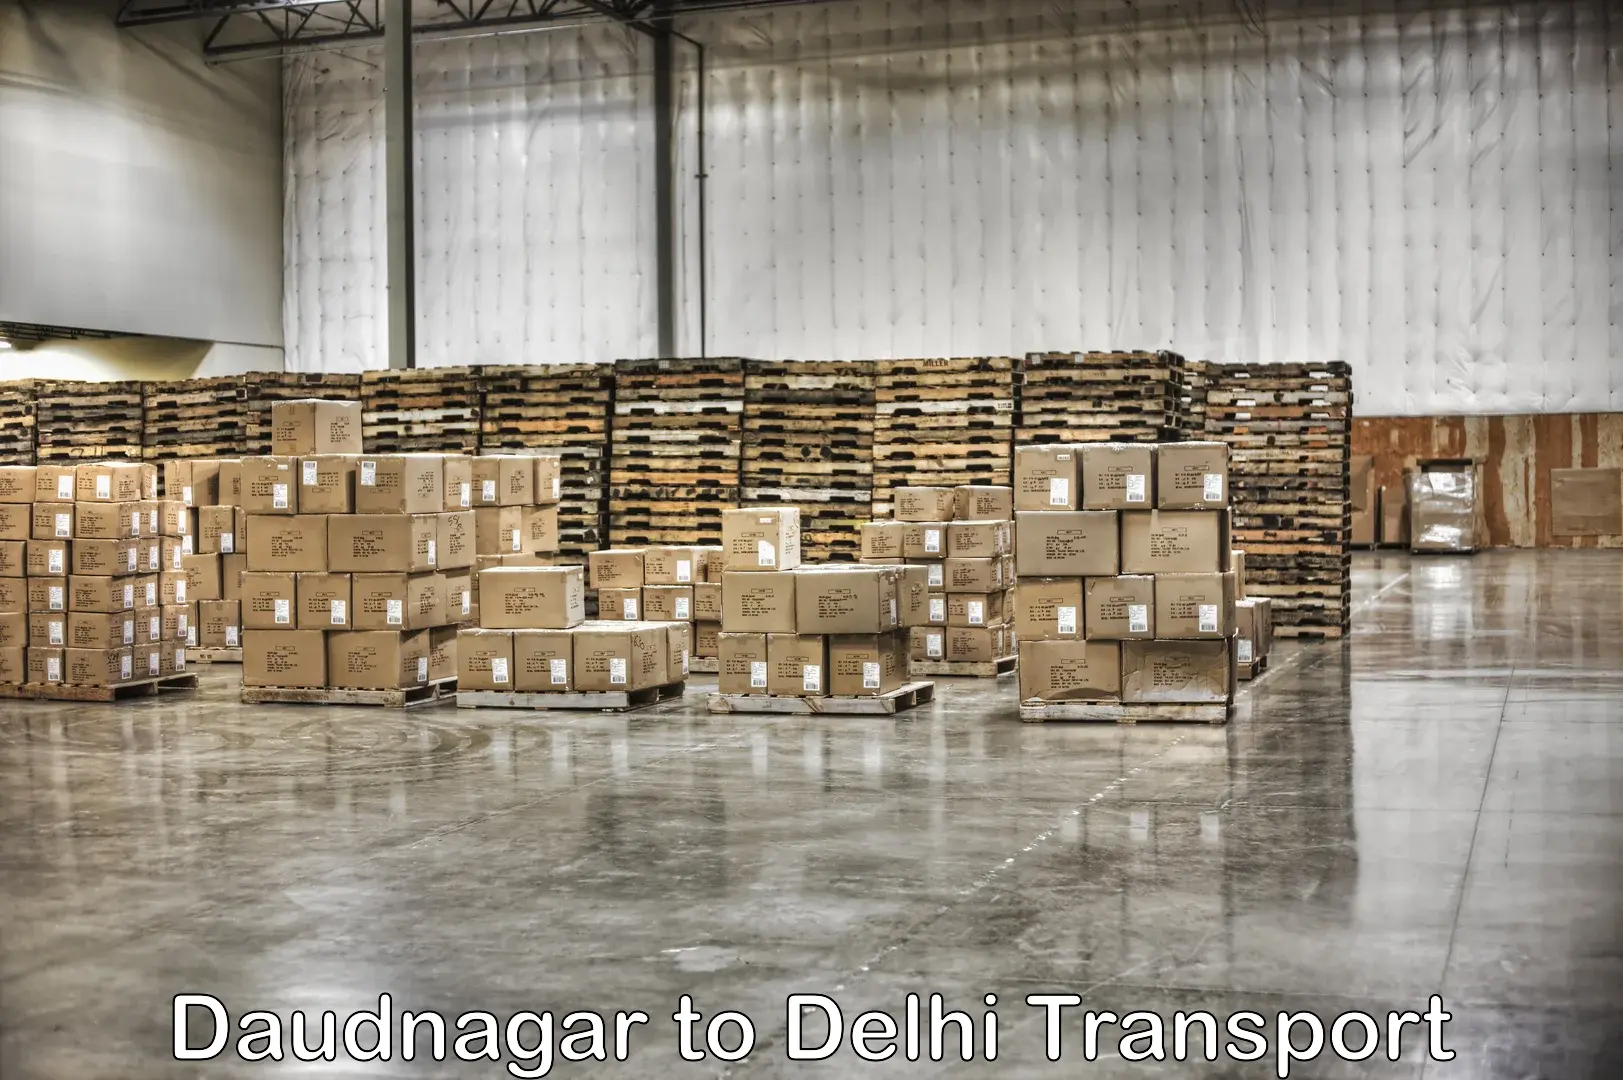 Pick up transport service Daudnagar to University of Delhi